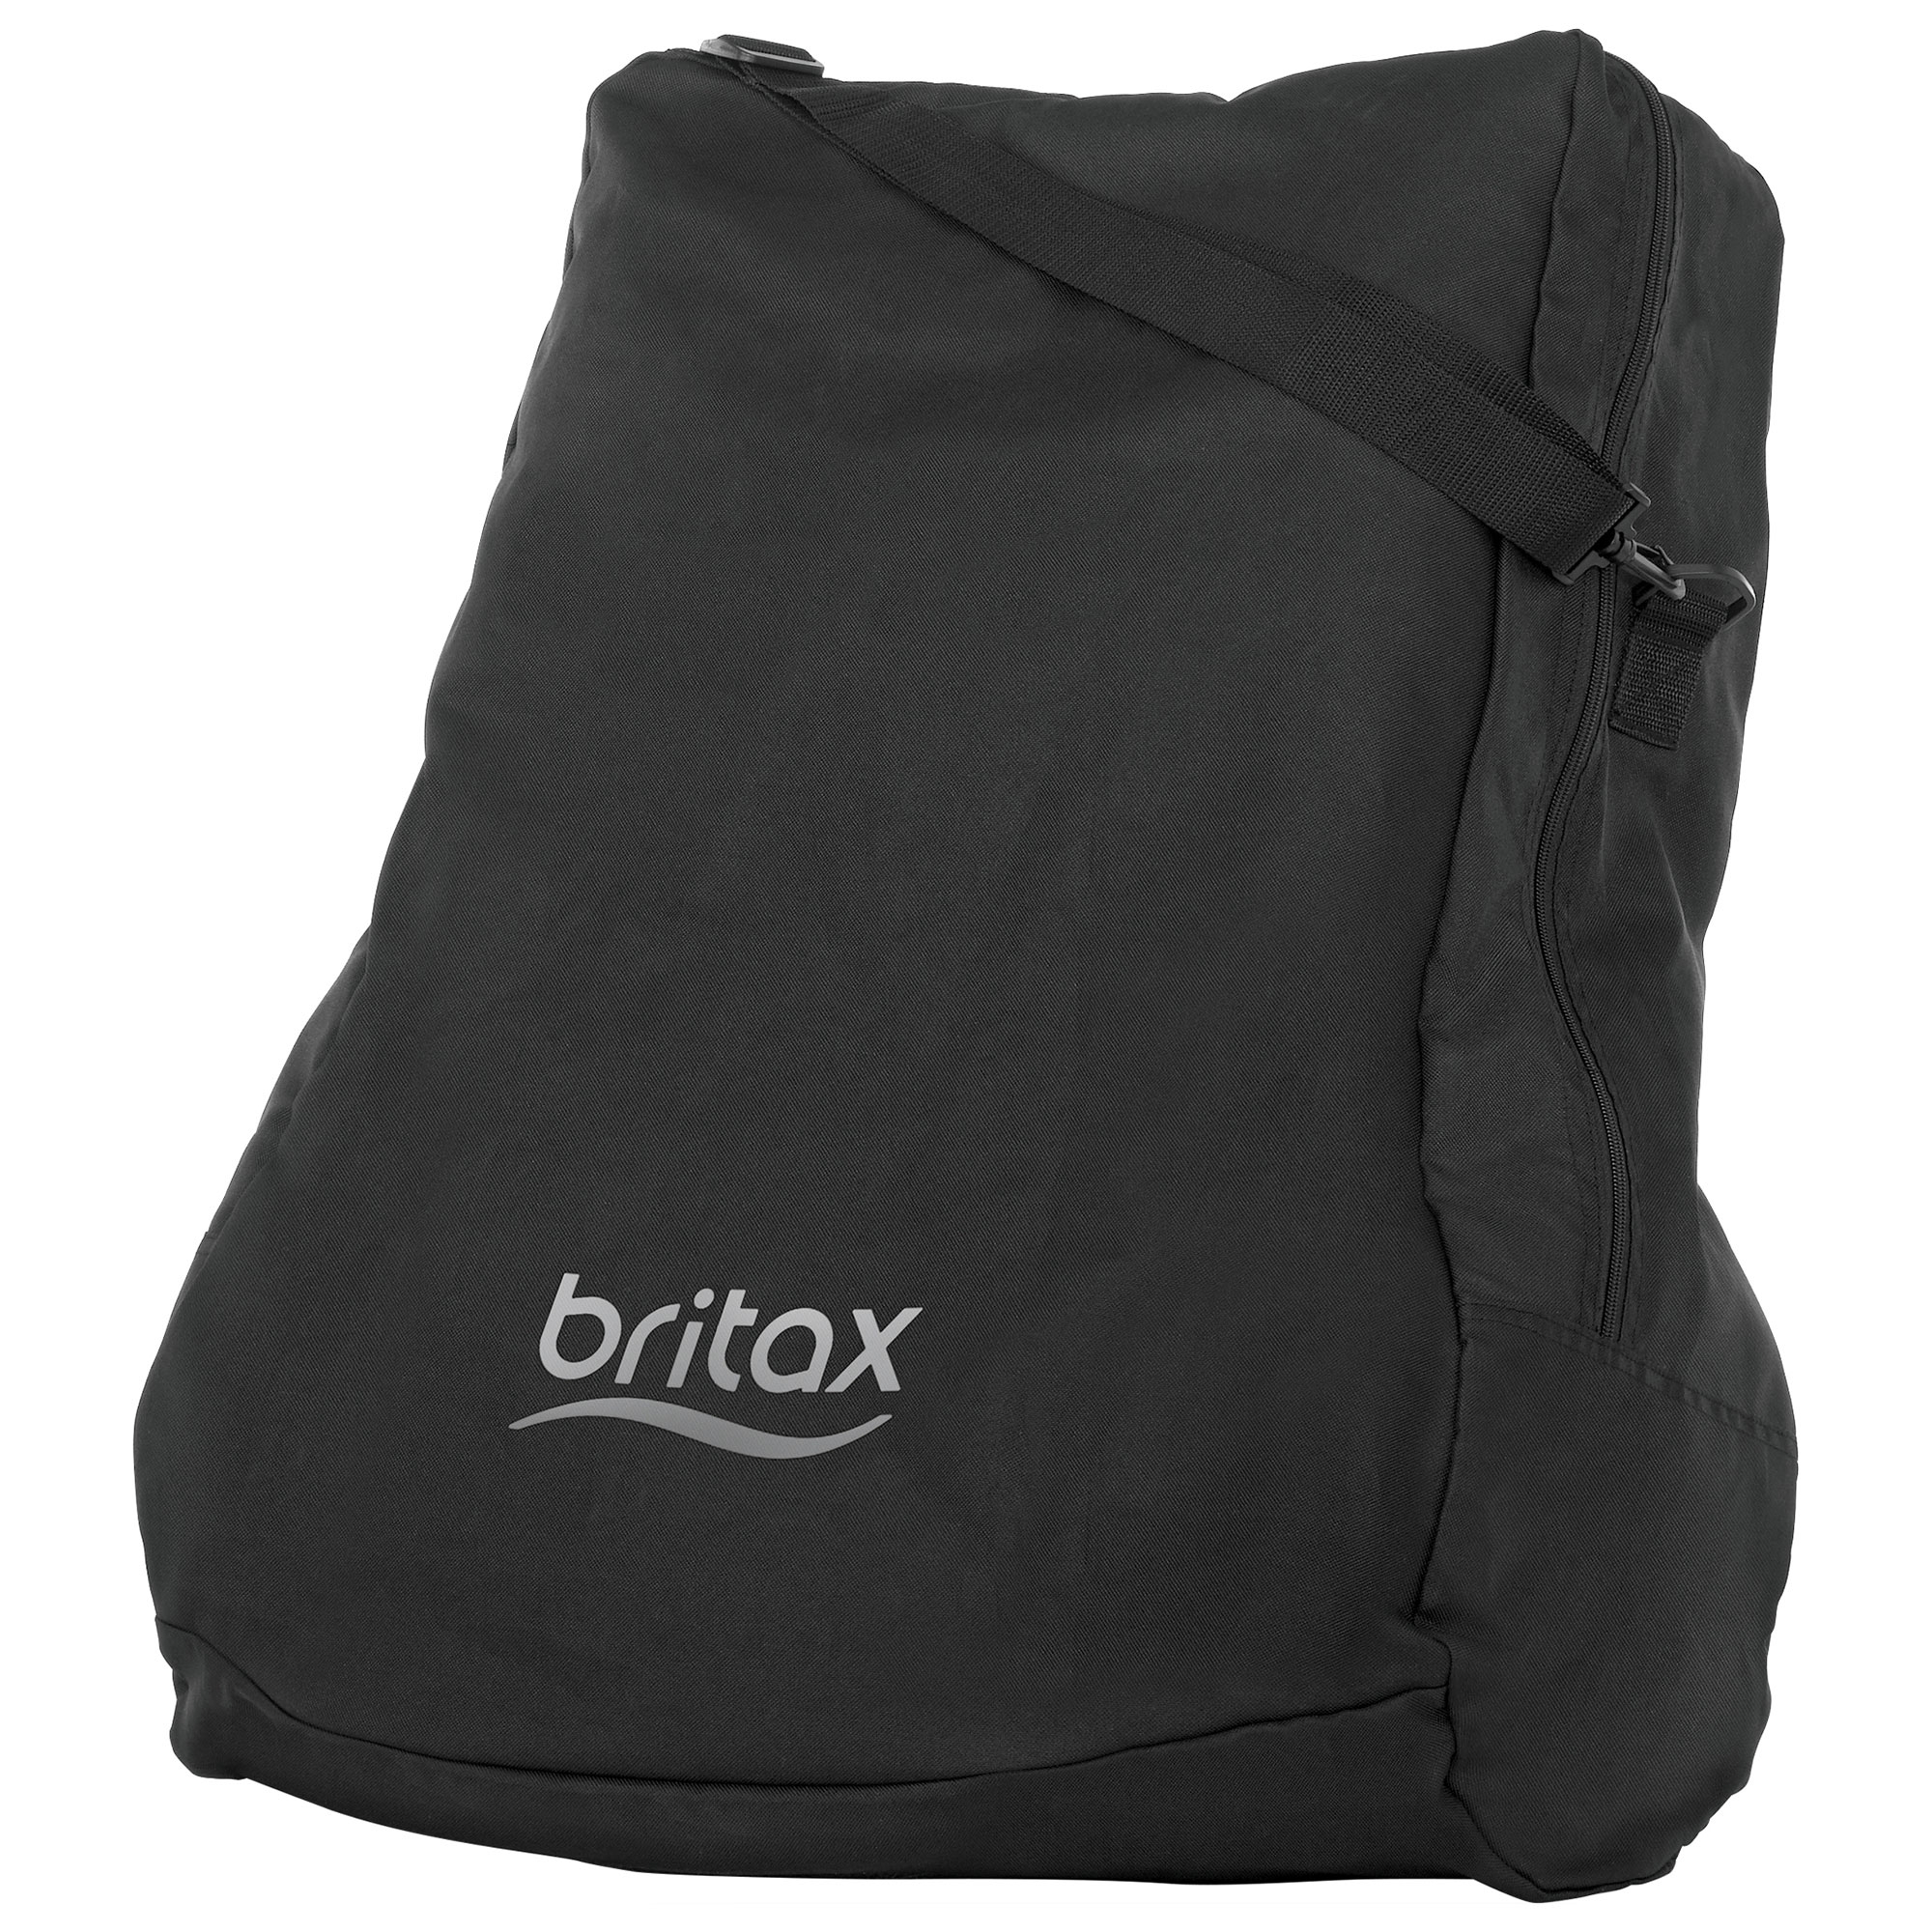 britax pram accessories